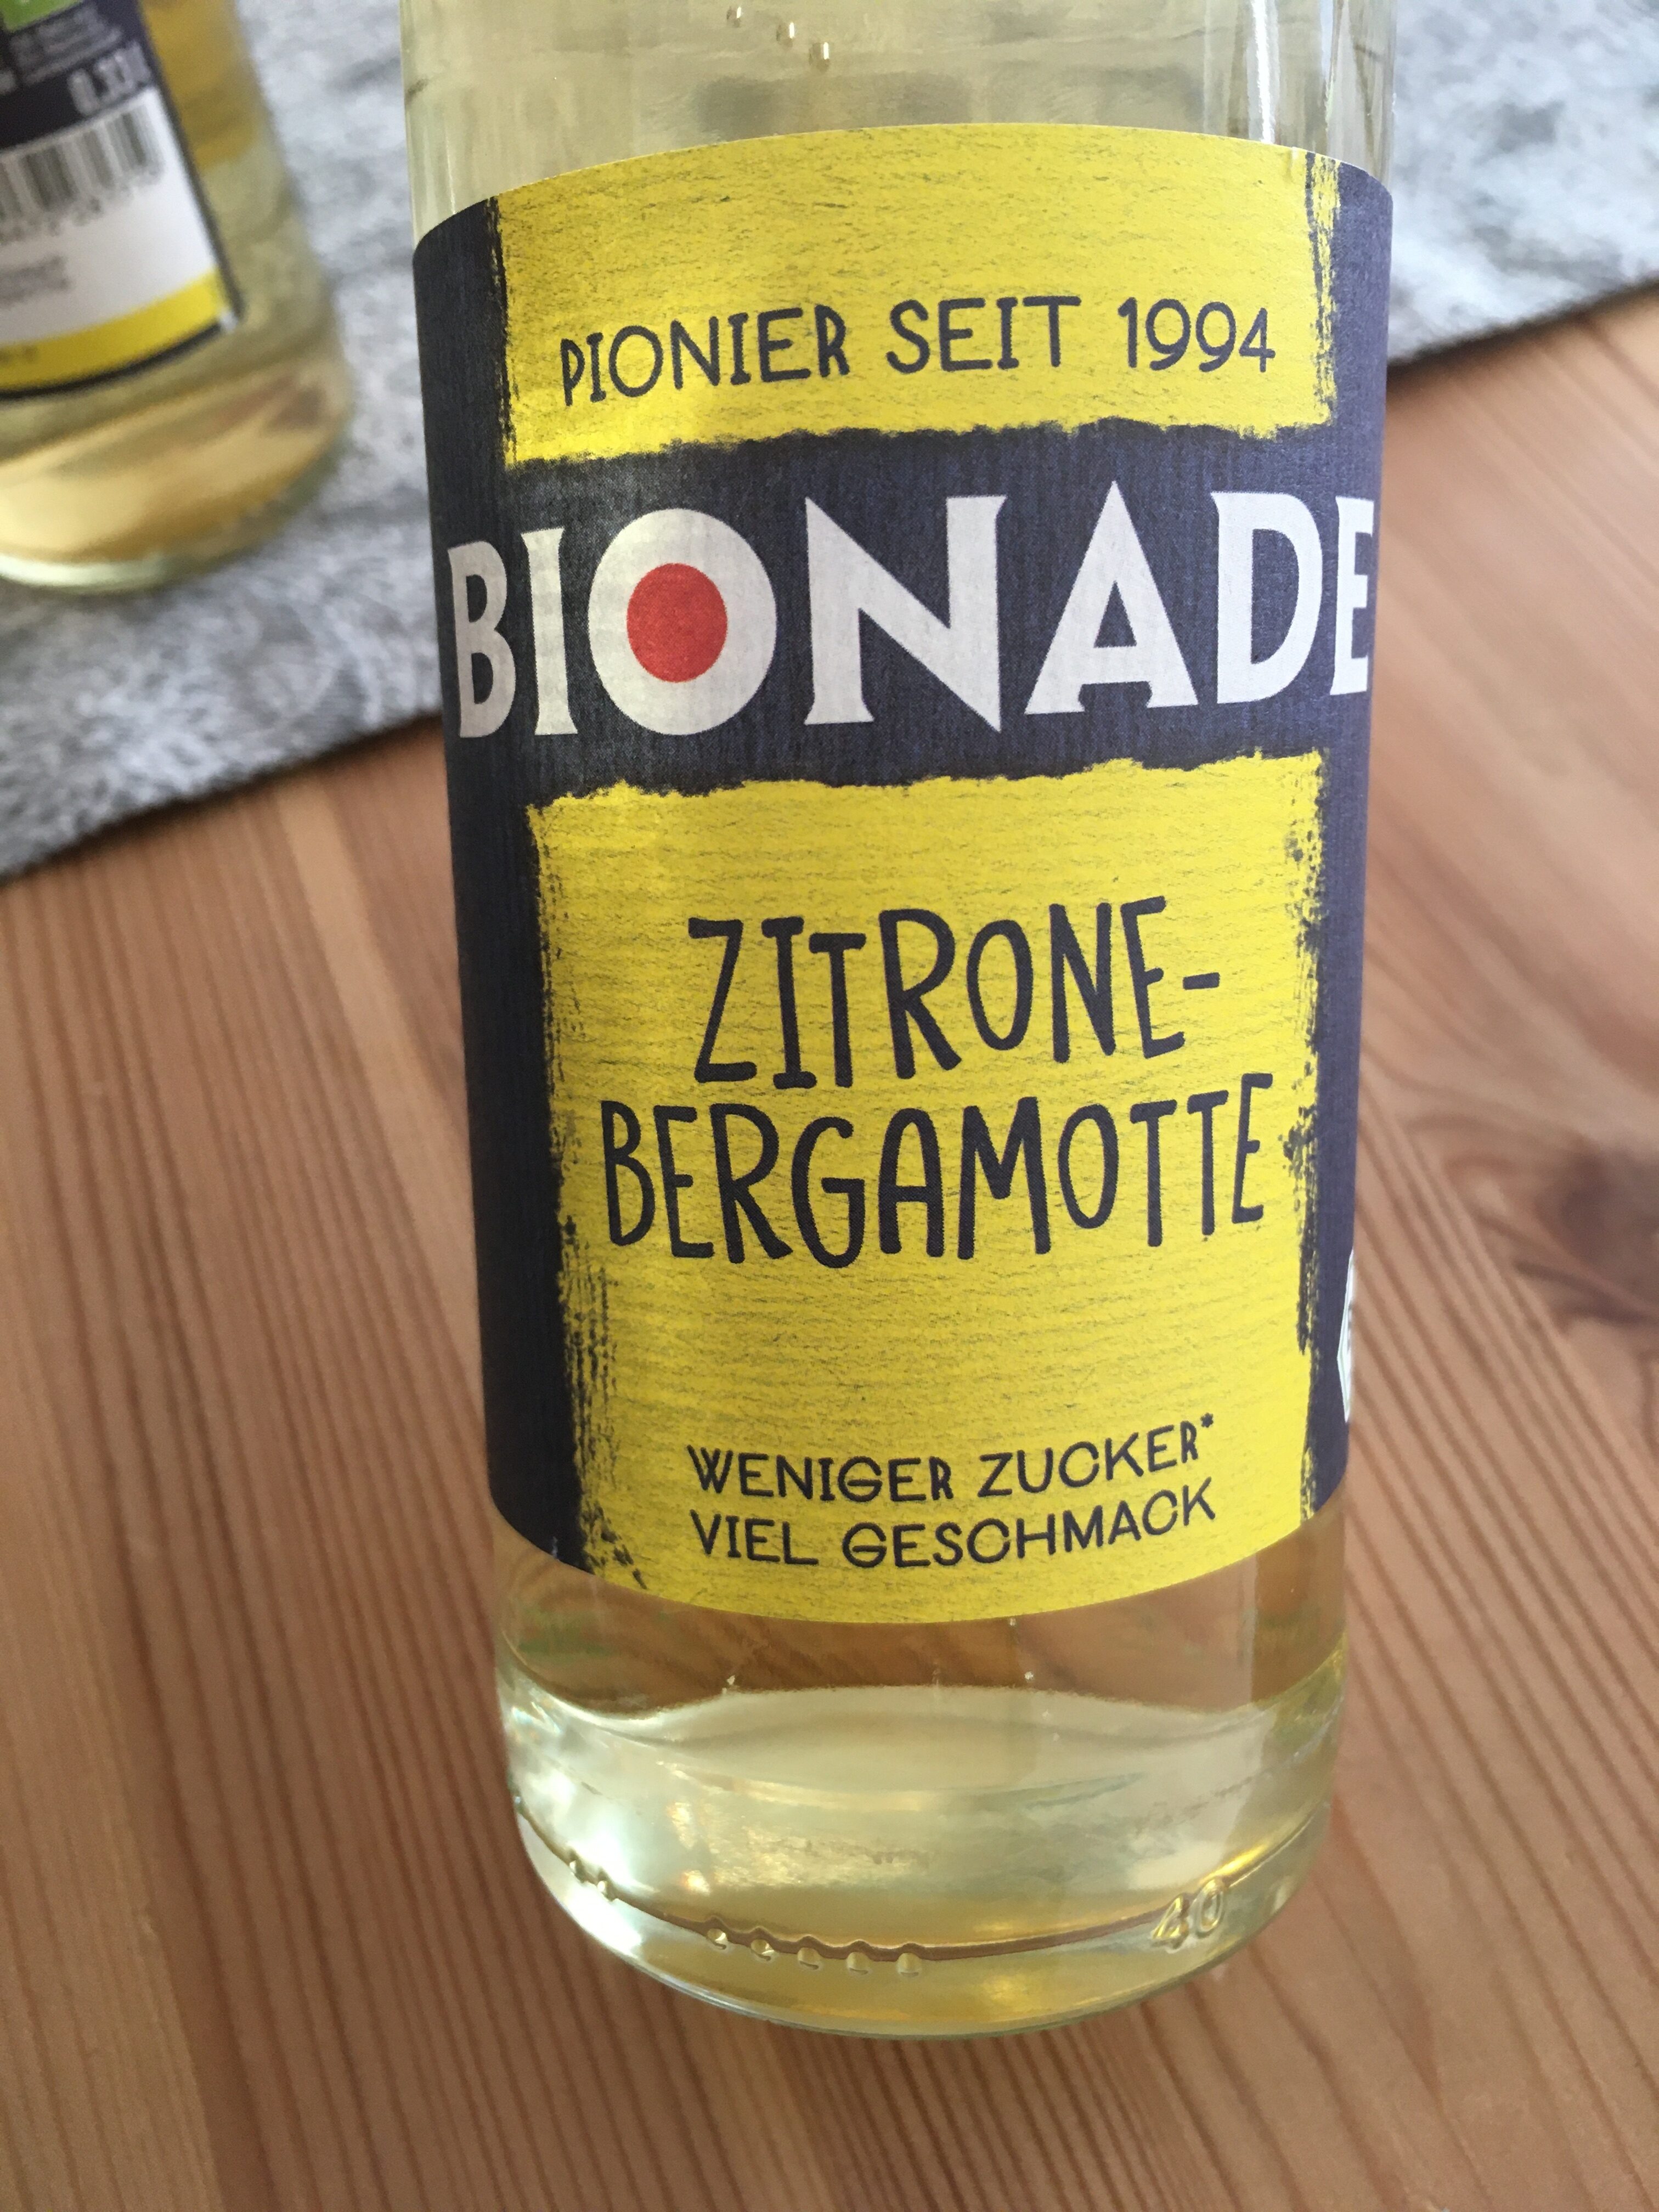 BIONADE Zitrone-Bergamotte - Product - de